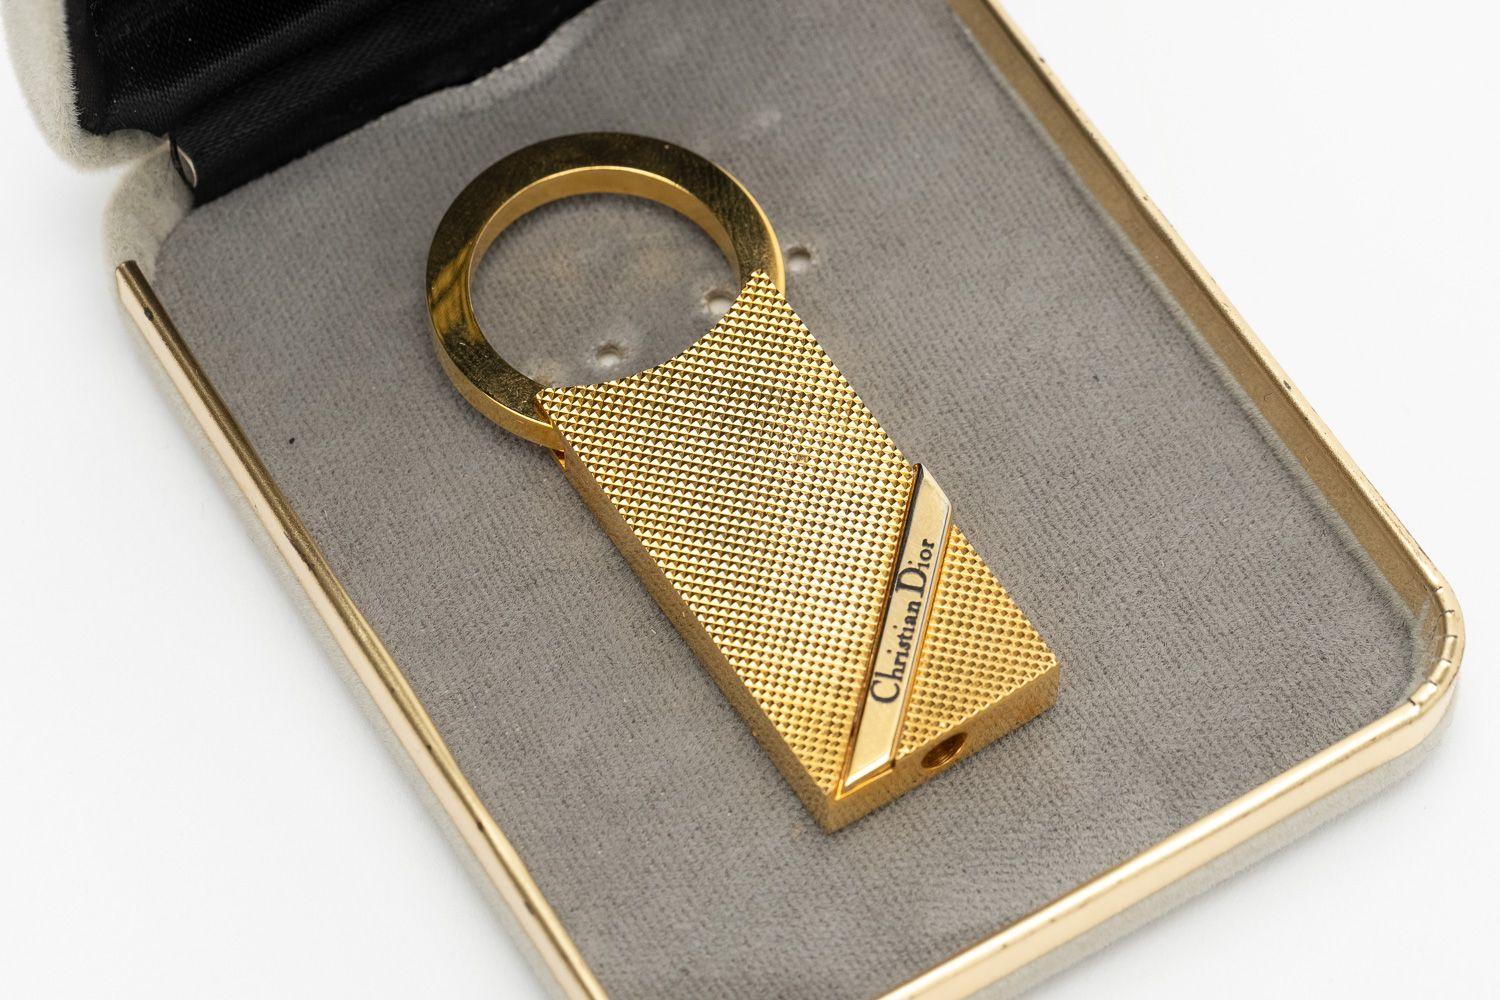 Porte-clés Dior vintage en plaqué or en très bon état. Une trouvaille rare.
Livré avec sa boîte d'origine.